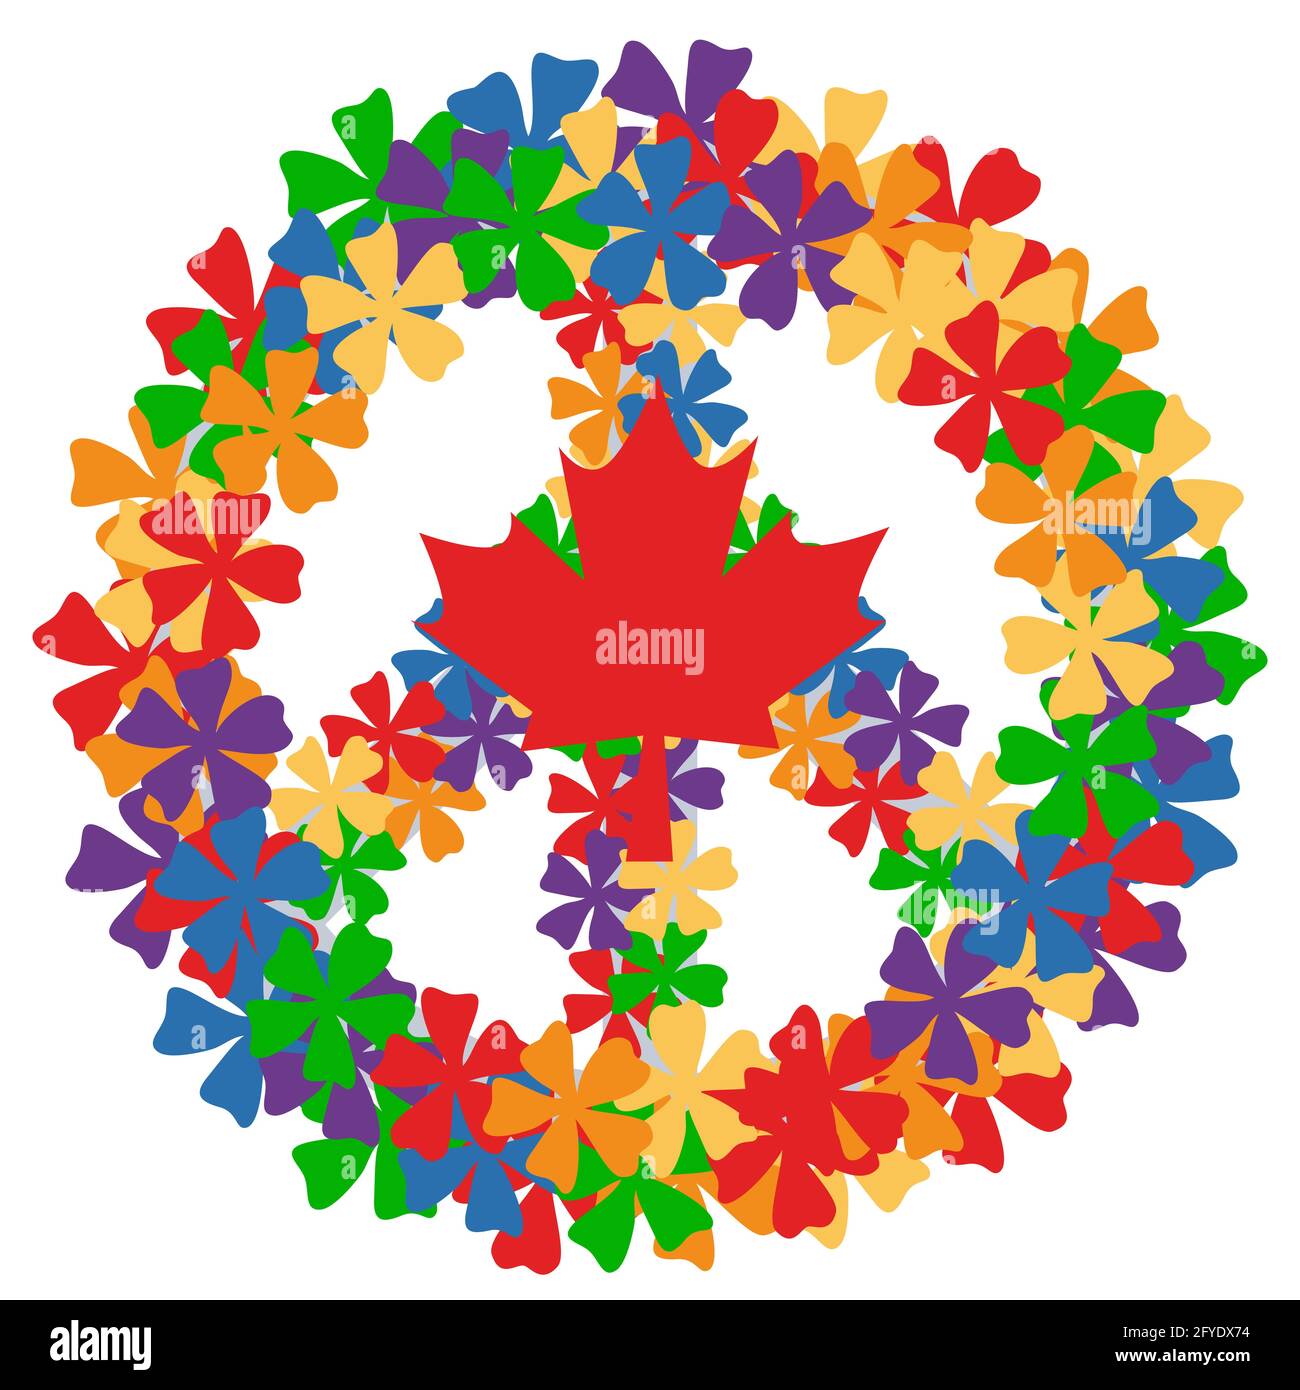 Buon giorno del Canada. Segno di pace fatto di fiori e foglia d'acero illustrazione vettoriale isolato su sfondo bianco Illustrazione Vettoriale